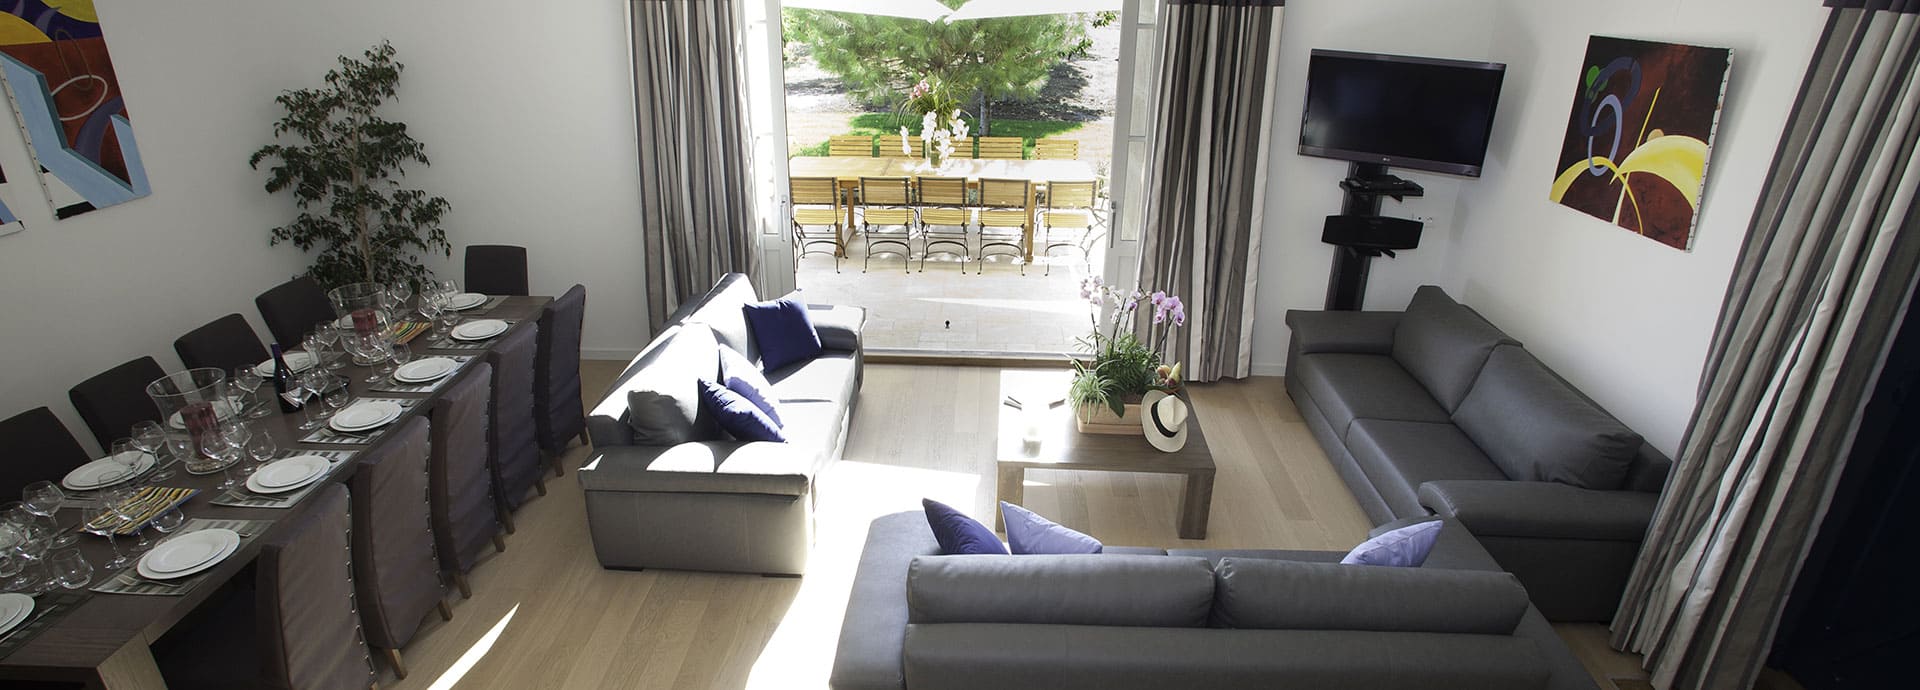 Bacchus guesthouse living-room, Domaine de la Vernède